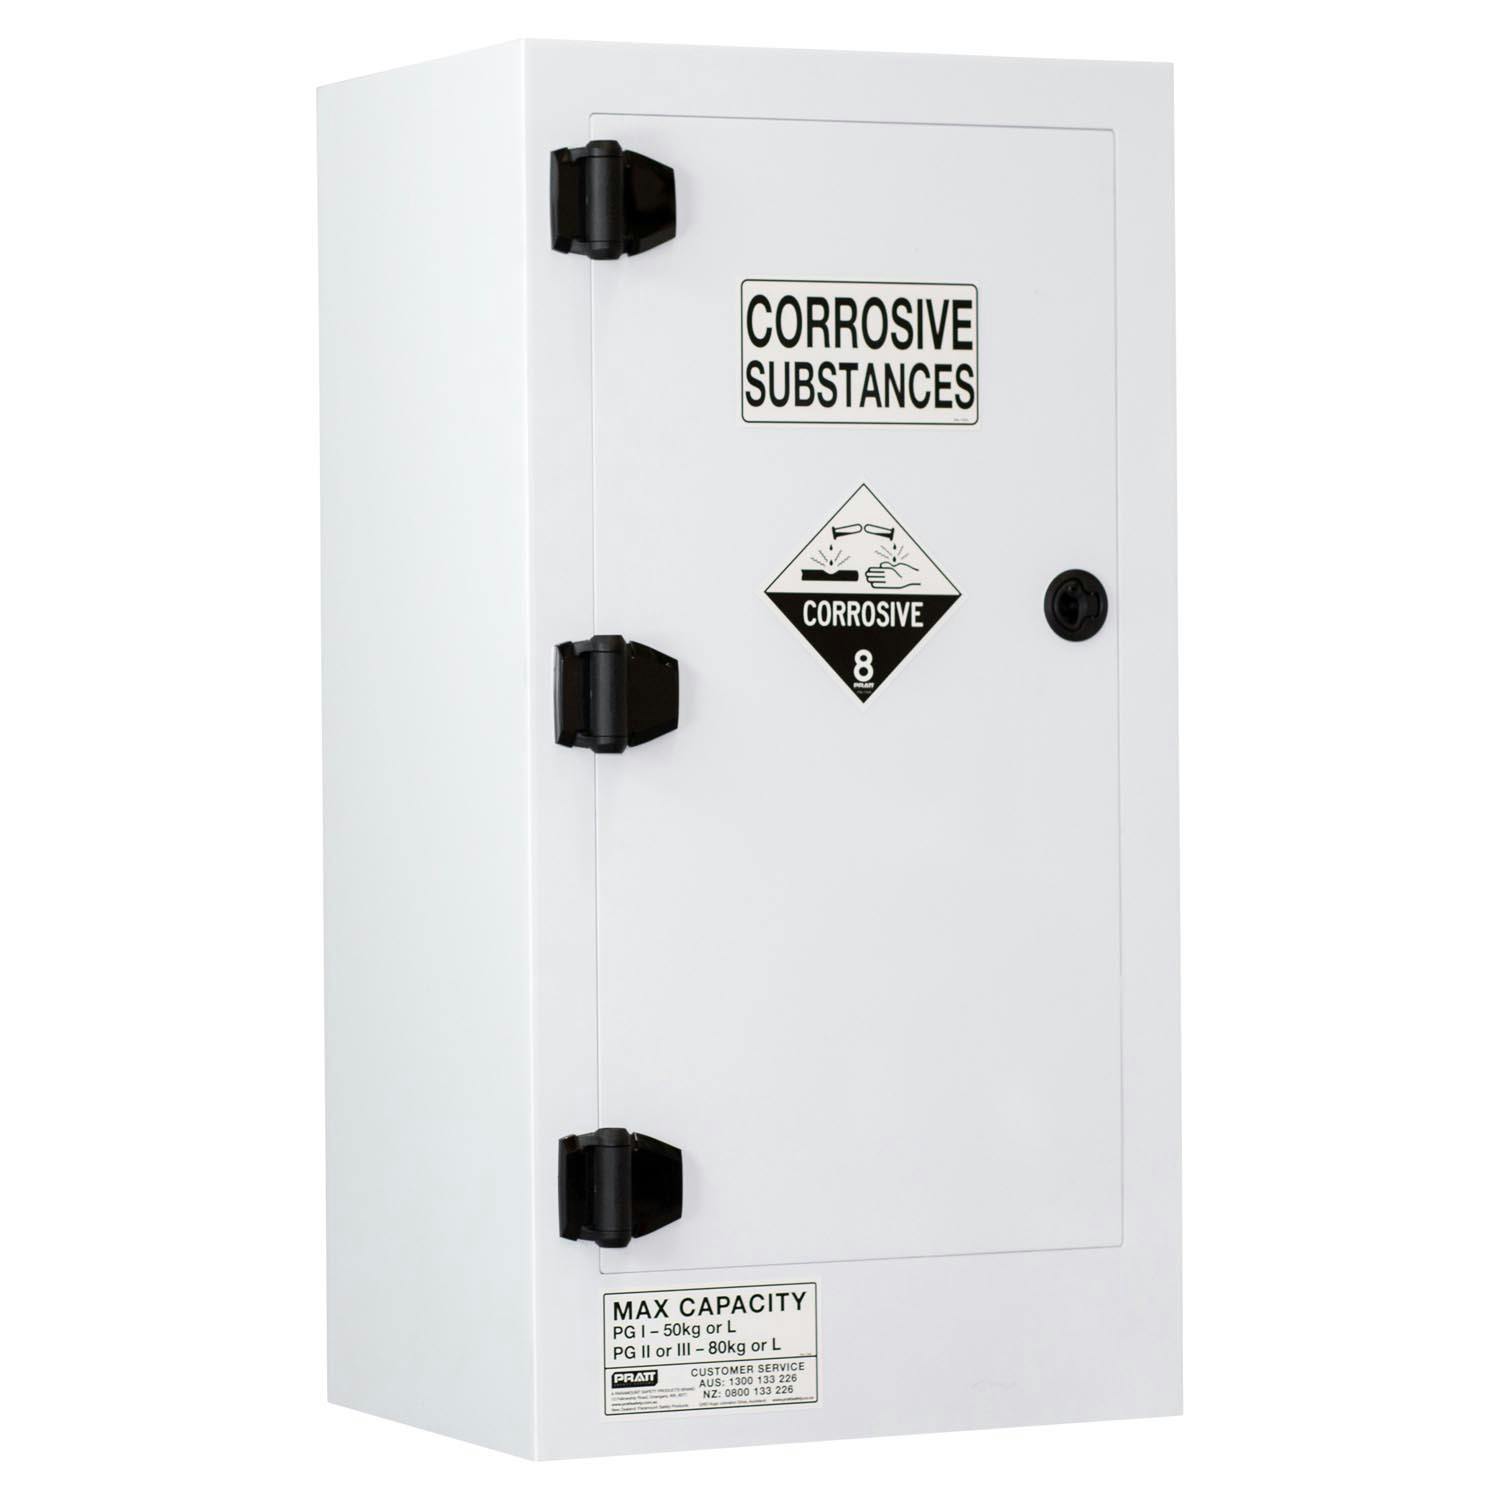 Pratt Corrosive Substance Storage Cabinet: Polypropylene - 80L - 1 Door - 2 Shelves